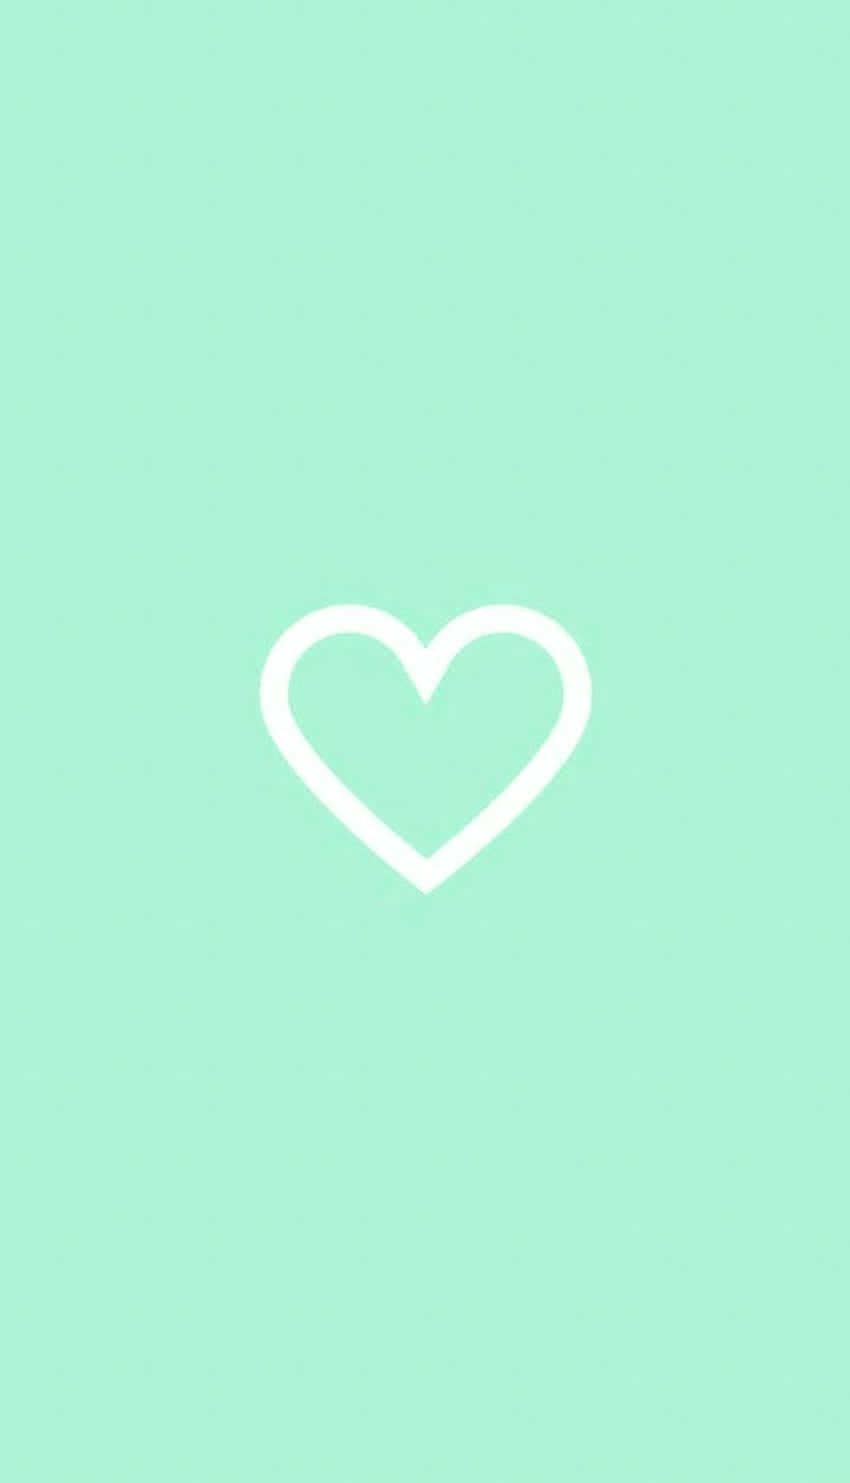 Kærlighed behøver ikke altid være blå og hvid - Find uventede glæder og spænding med mintgrønne hjerter Wallpaper